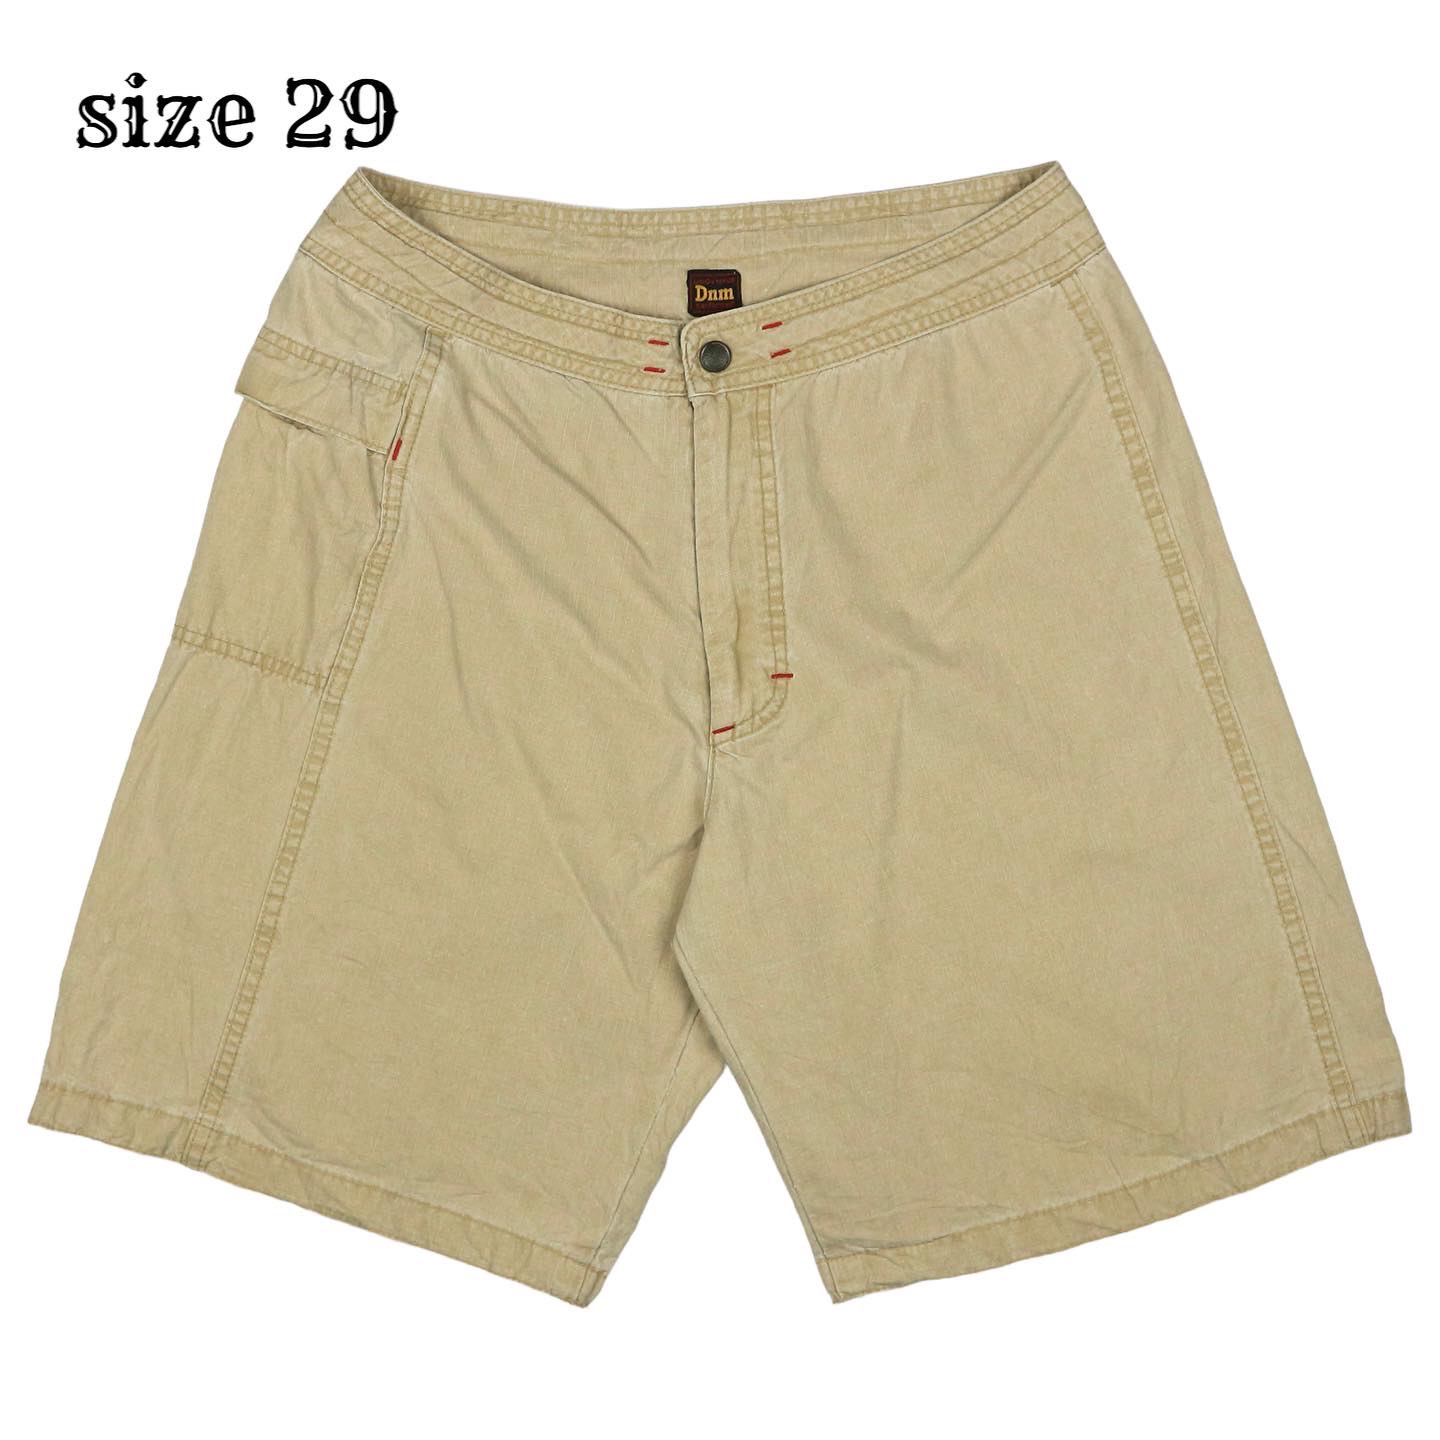 Denime Shorts Size 29